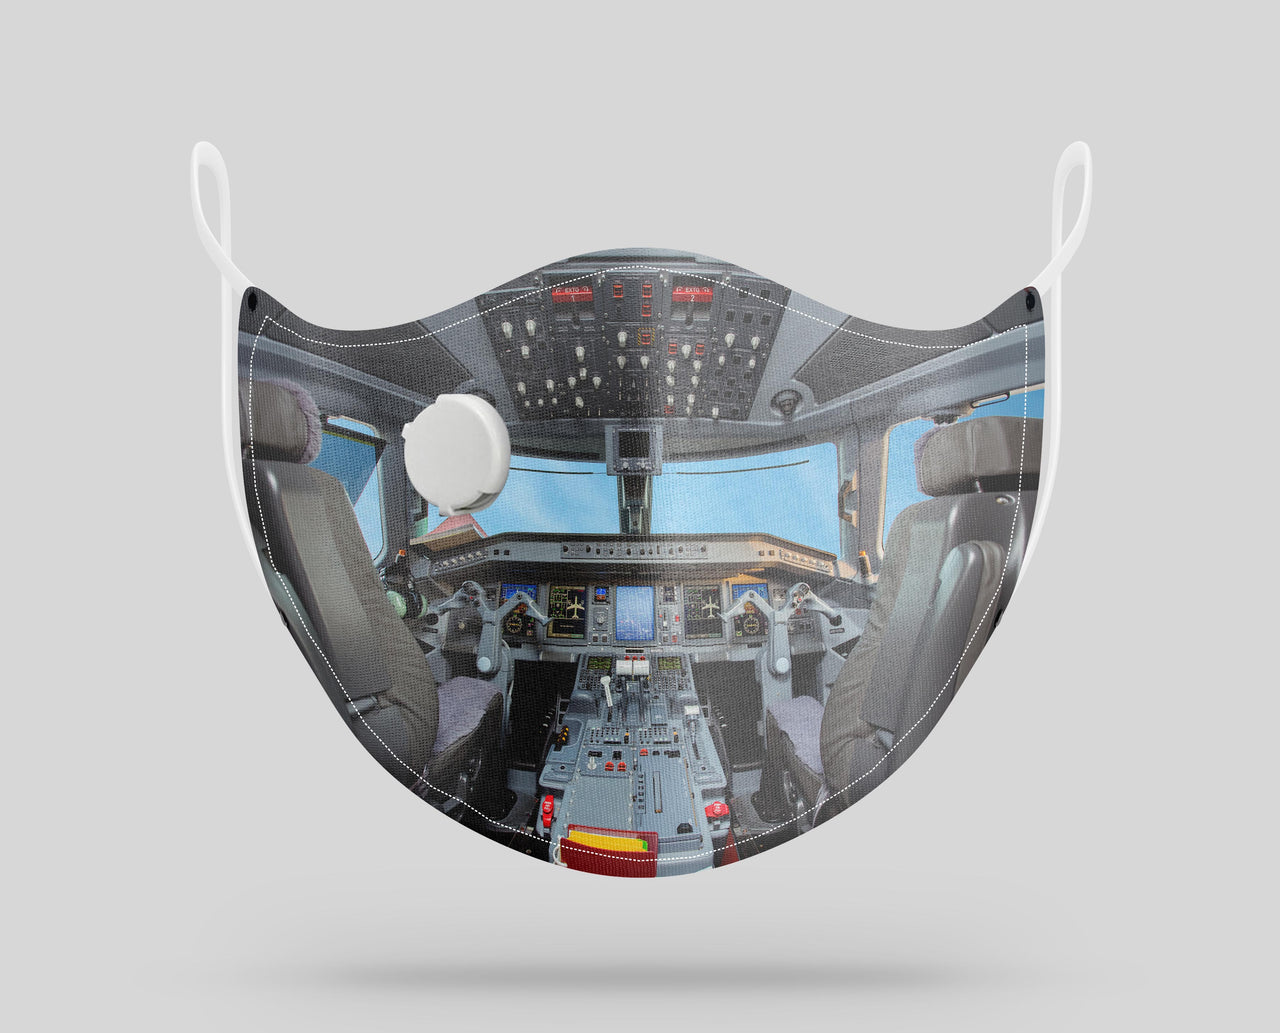 Embraer E190 Cockpit Designed Face Masks